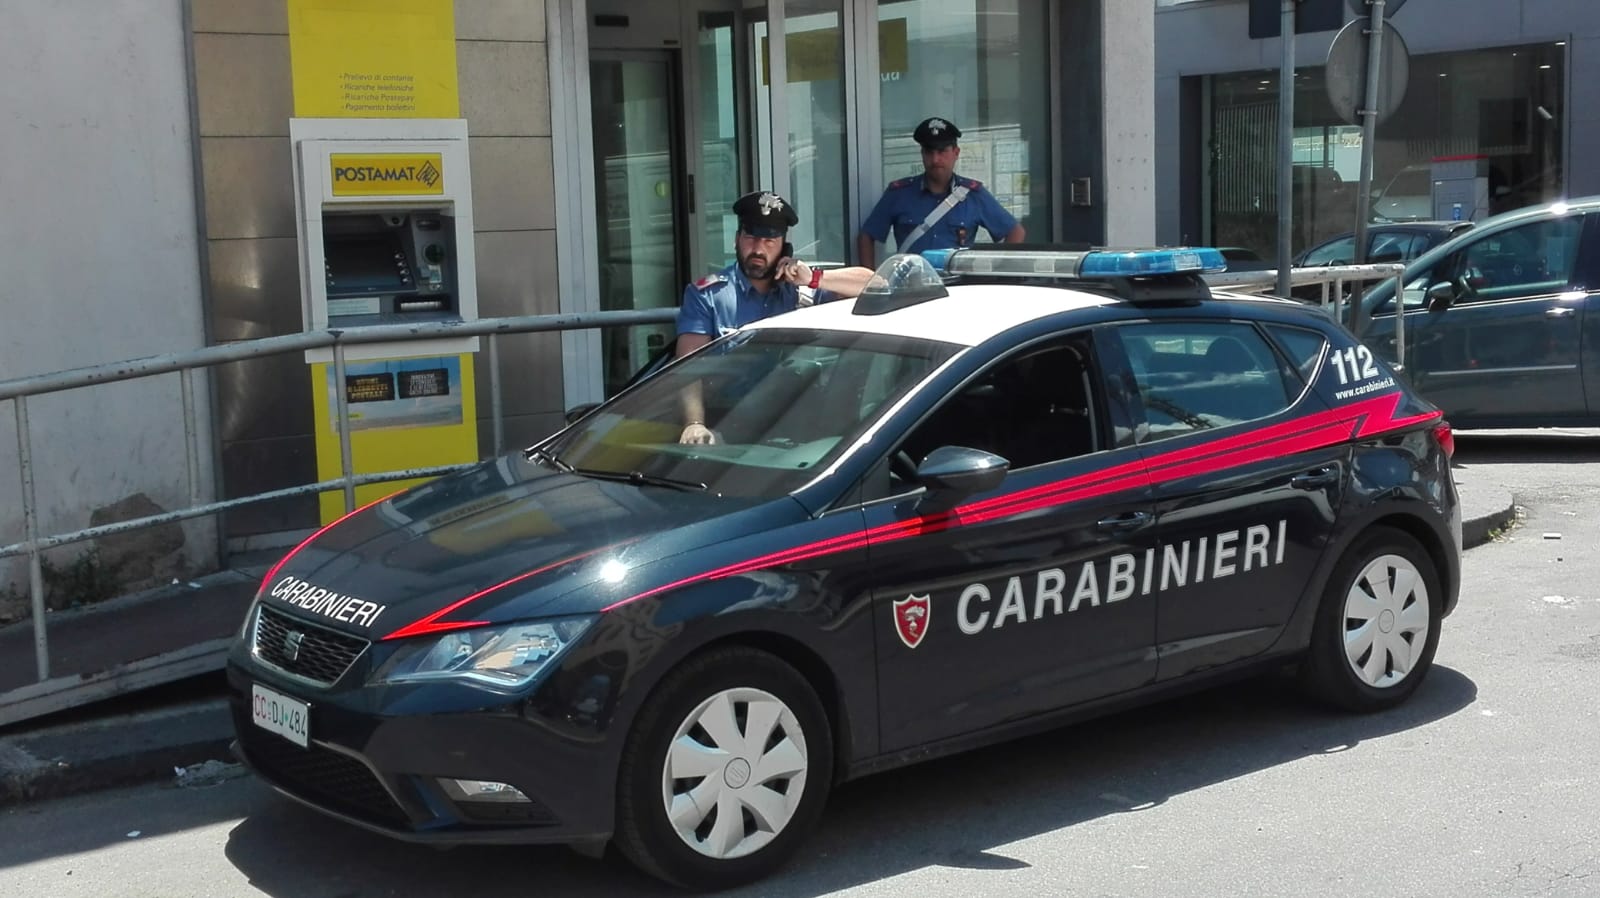 Carabinieri presso Poste via san Cosimo